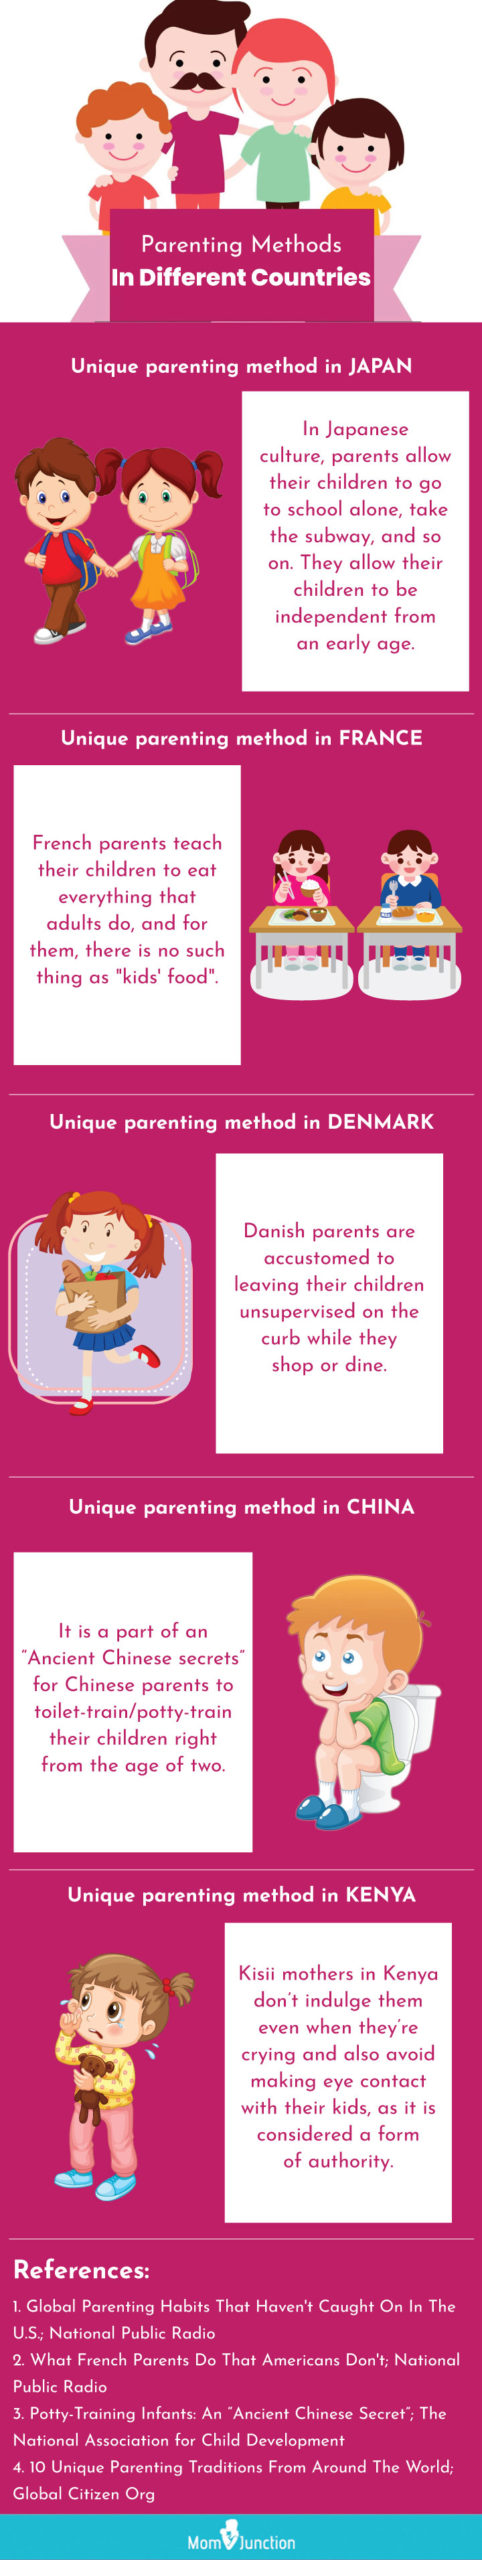 permissive parenting (infographic)